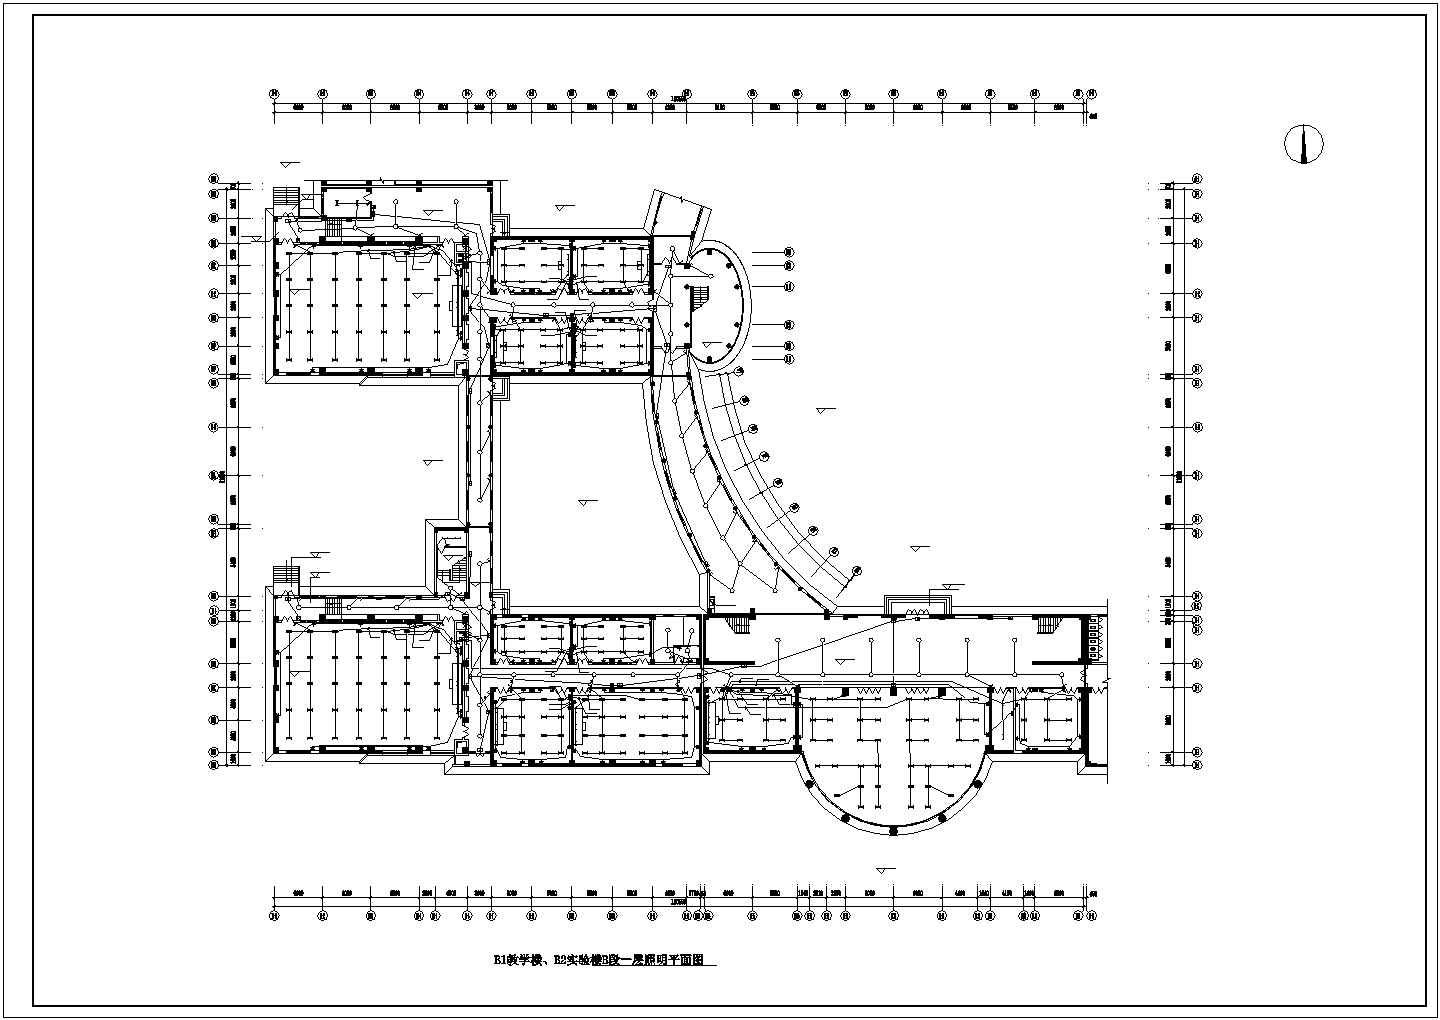 南昌市某高校五层框混结构教学实验楼电气系统设计CAD图纸